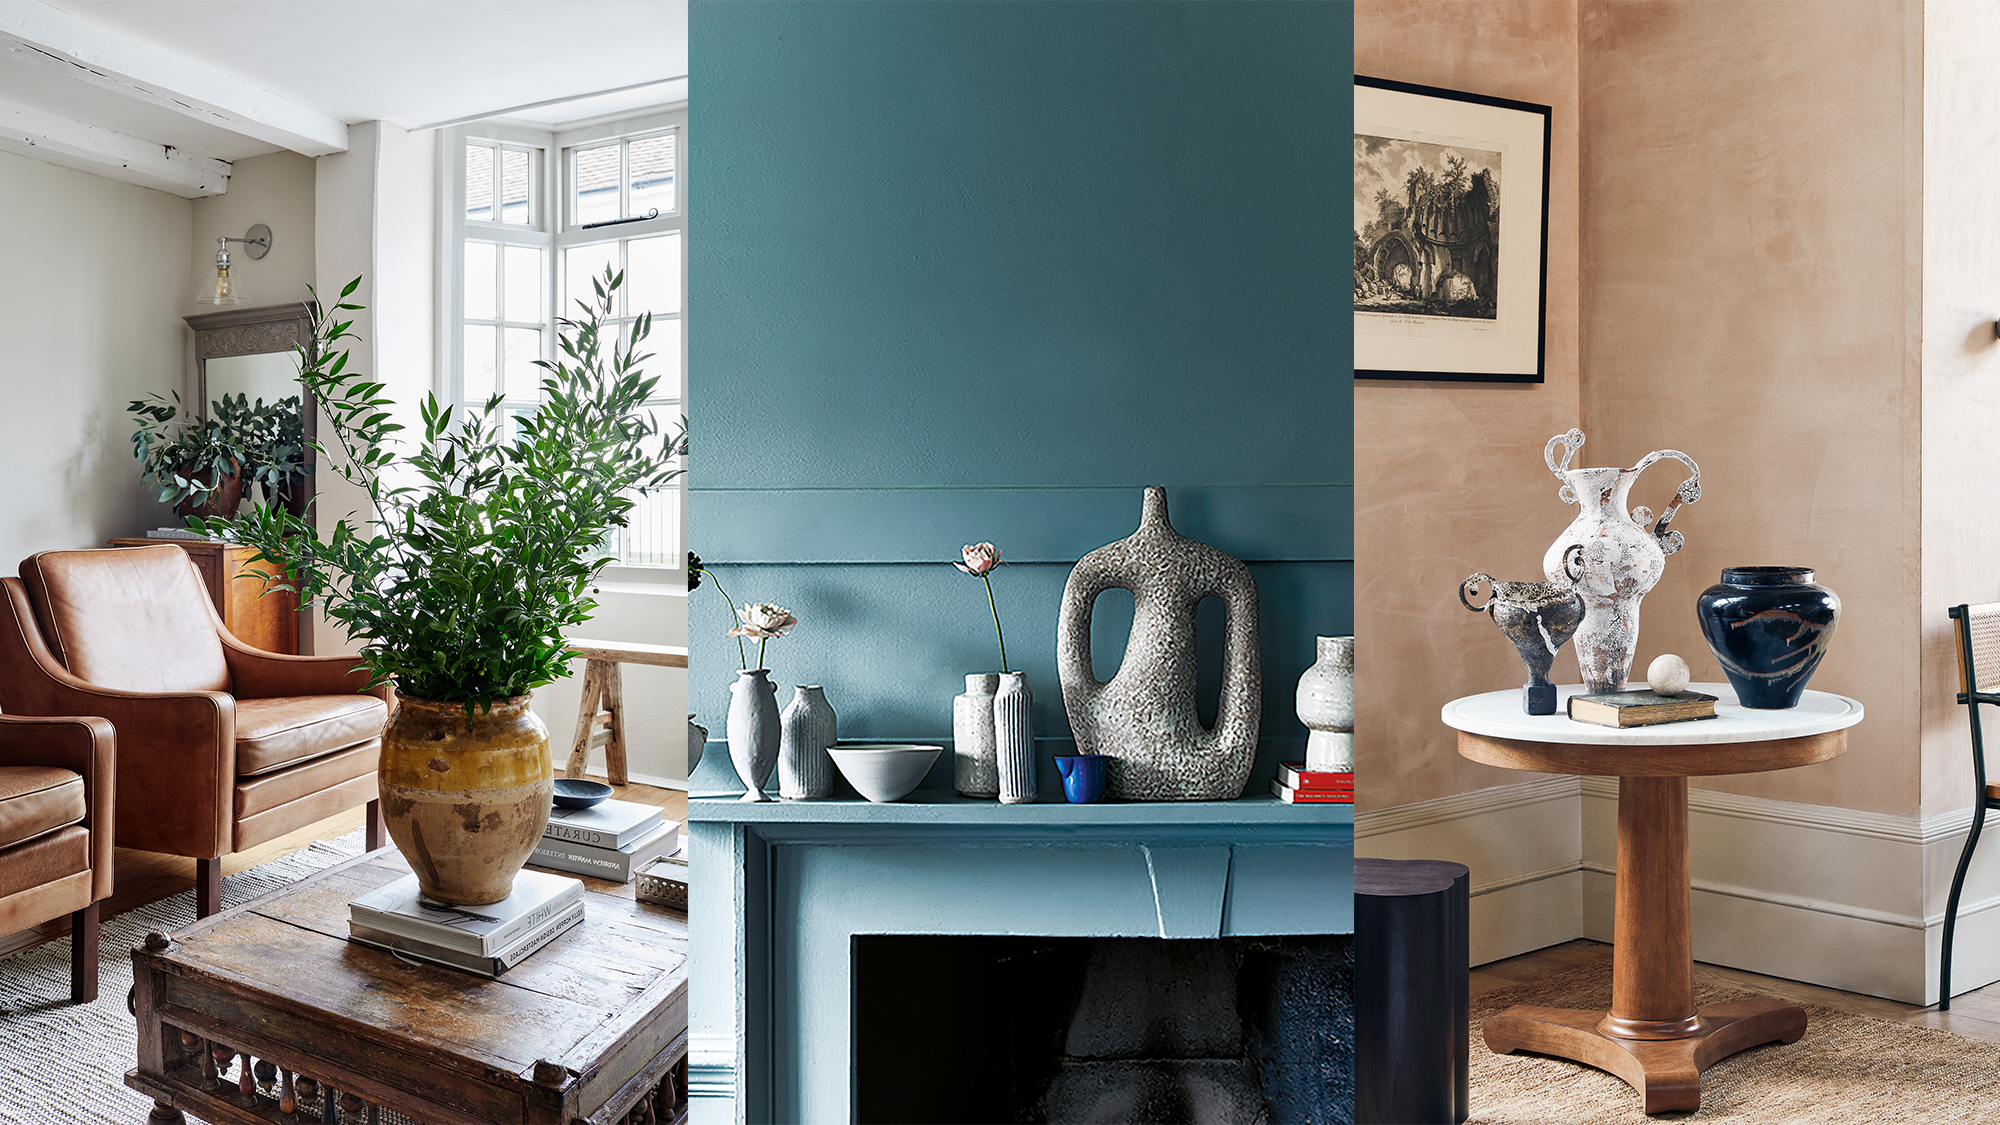 New Design White Ceramic Vase/Ornament Modern Home Decor Perfect Gift For Her 